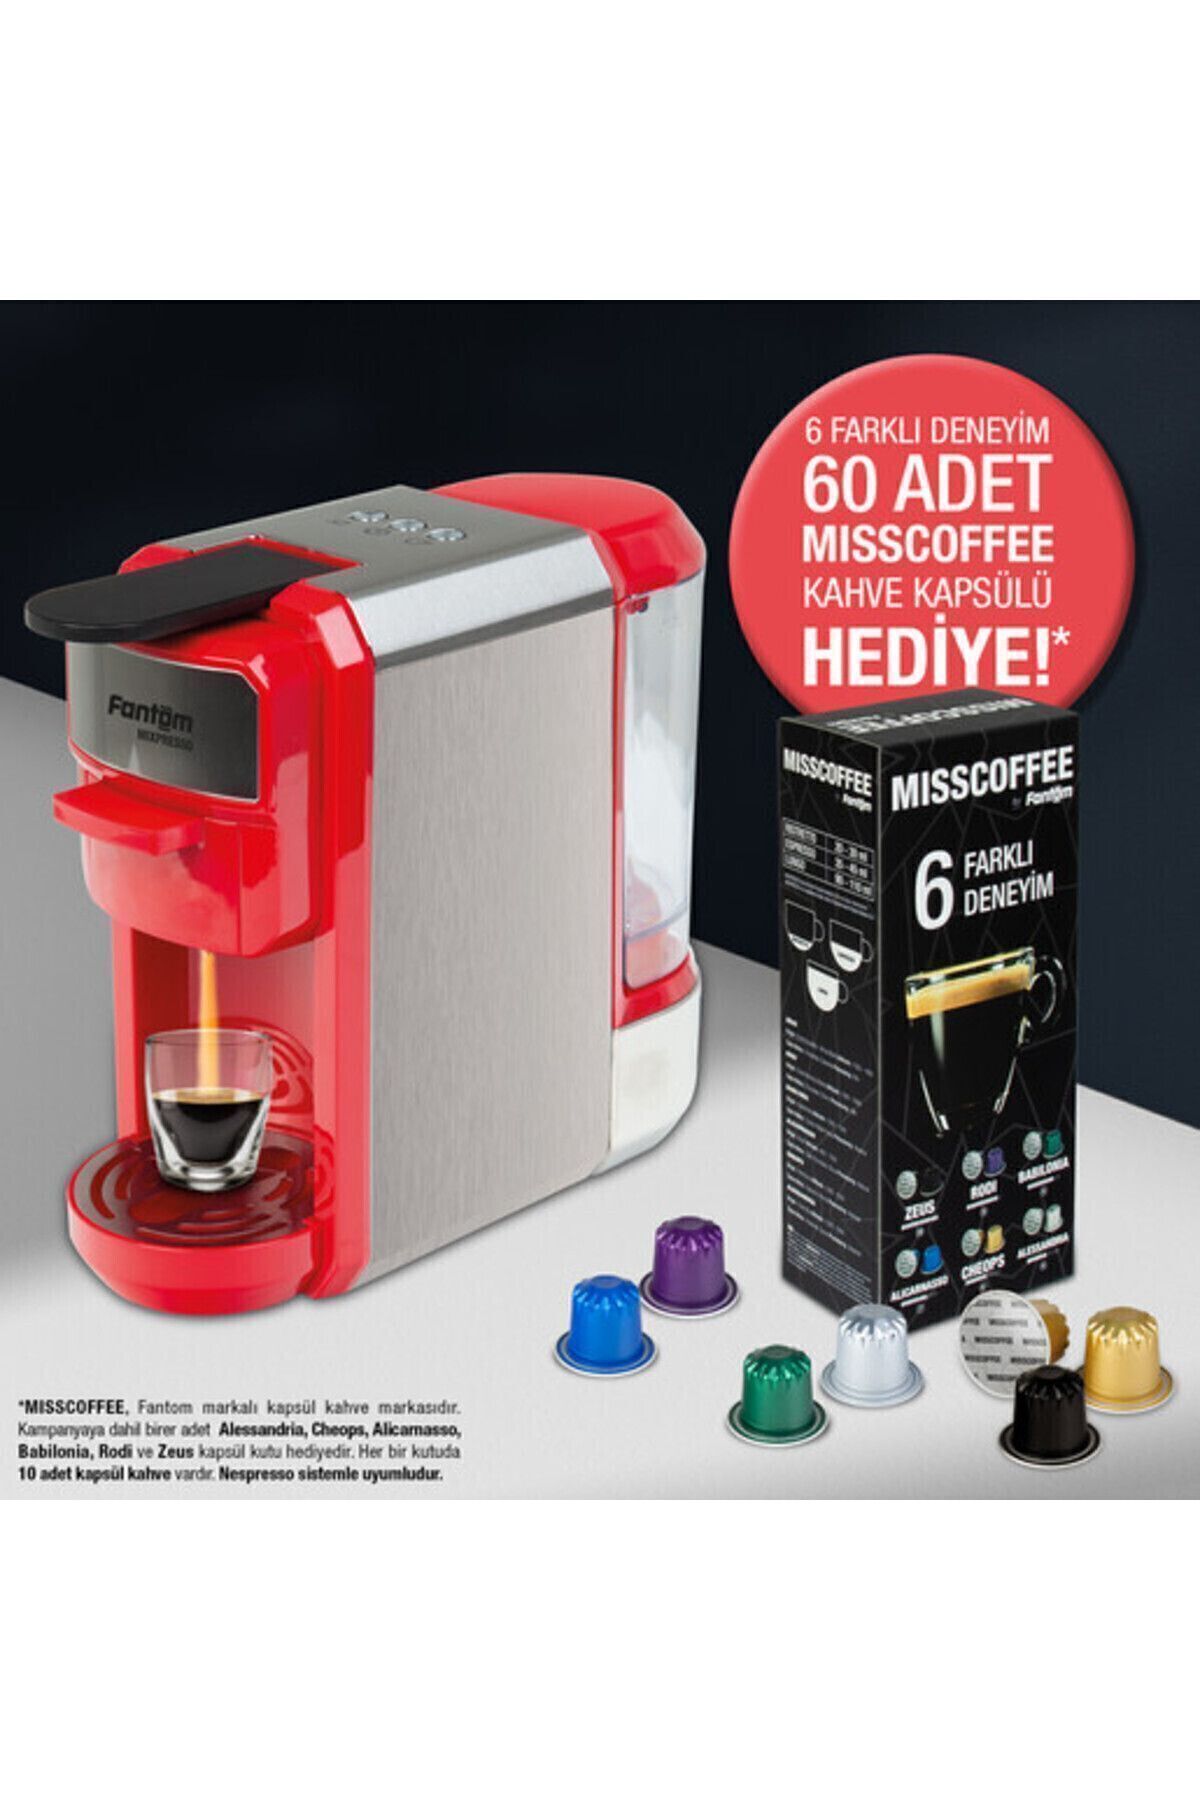 FANTOM Mıxpresso Kapsüllü Kahve Makinesi 60 Adet Kapsül Hediyeli Kırmızı